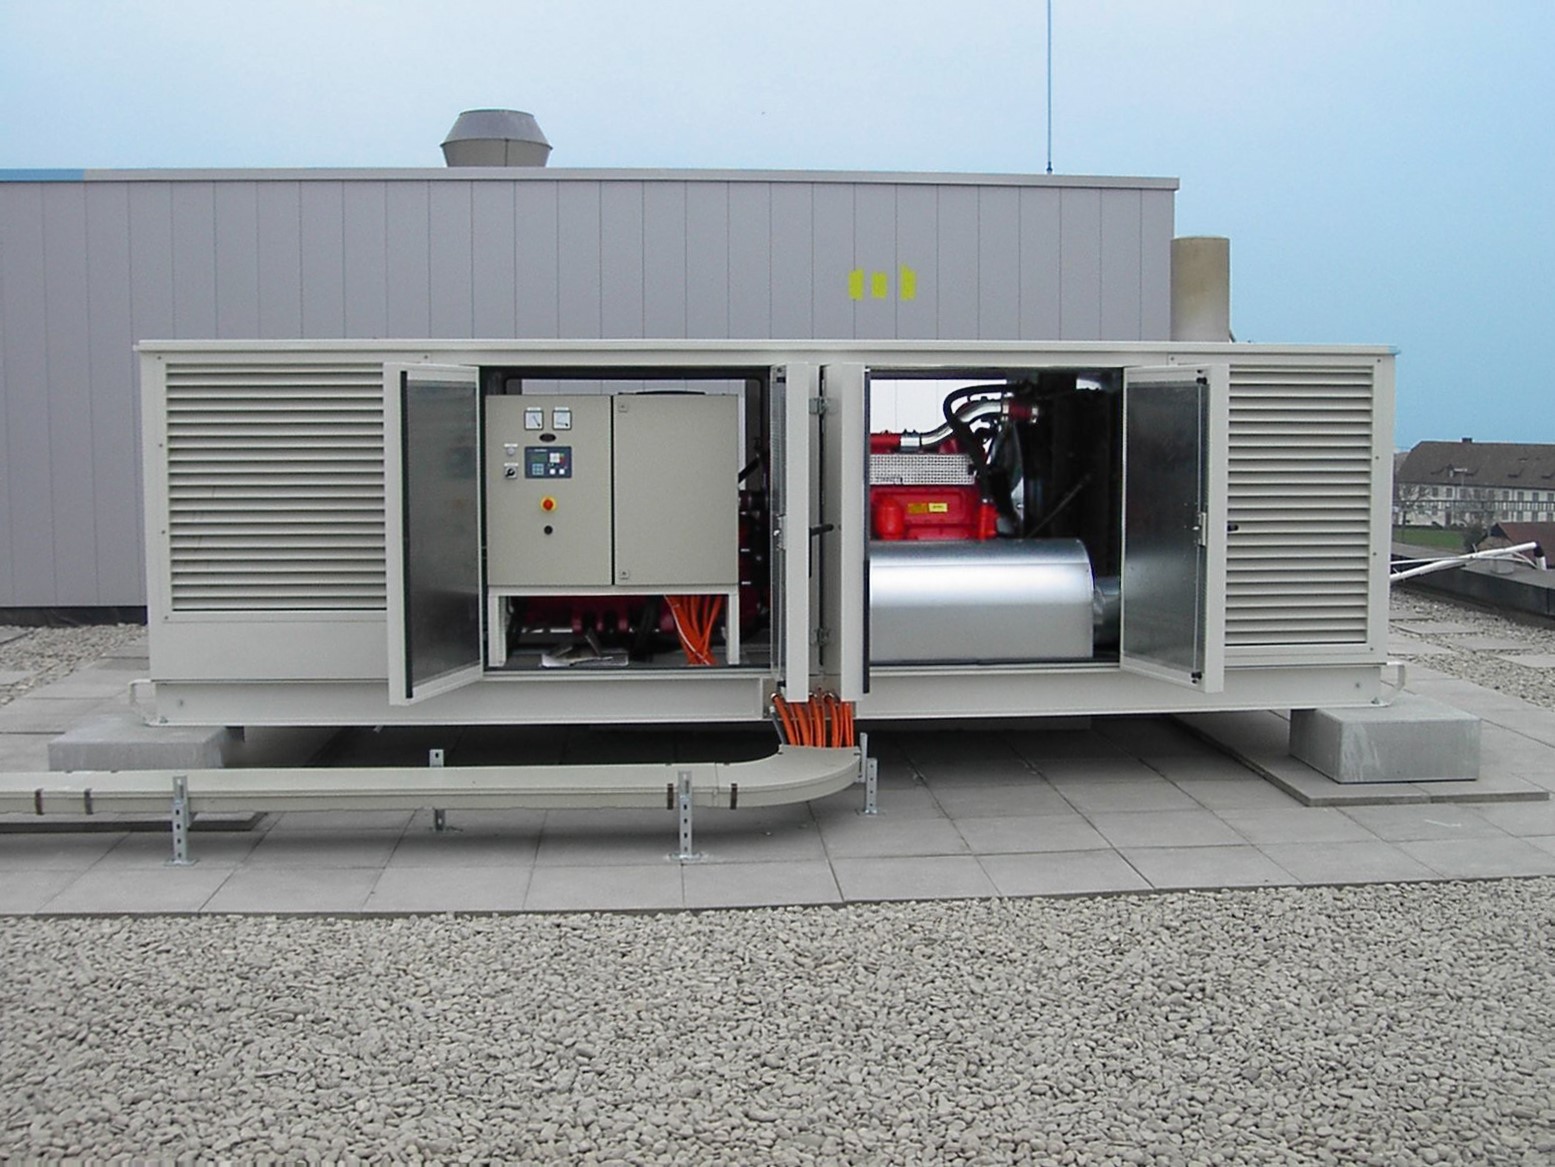 200 kVA schallgedämmtes Notstromanlage im Umbaugehäuse zur Notstromversorgung einer Bank.